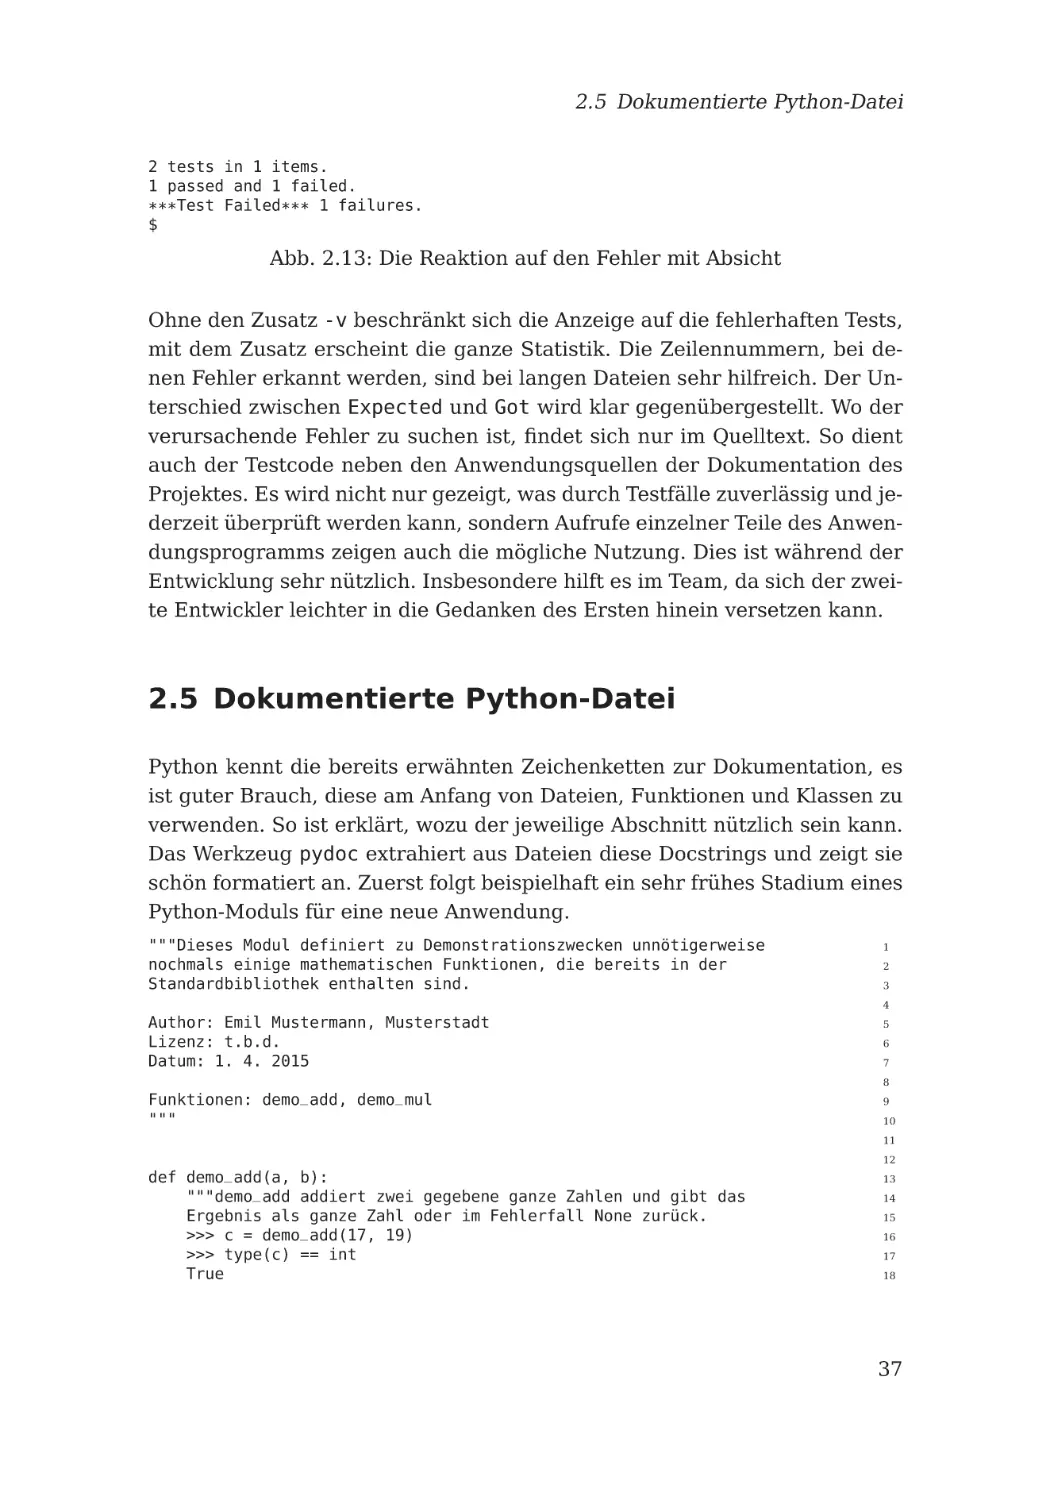 2.5 Dokumentierte Python-Datei